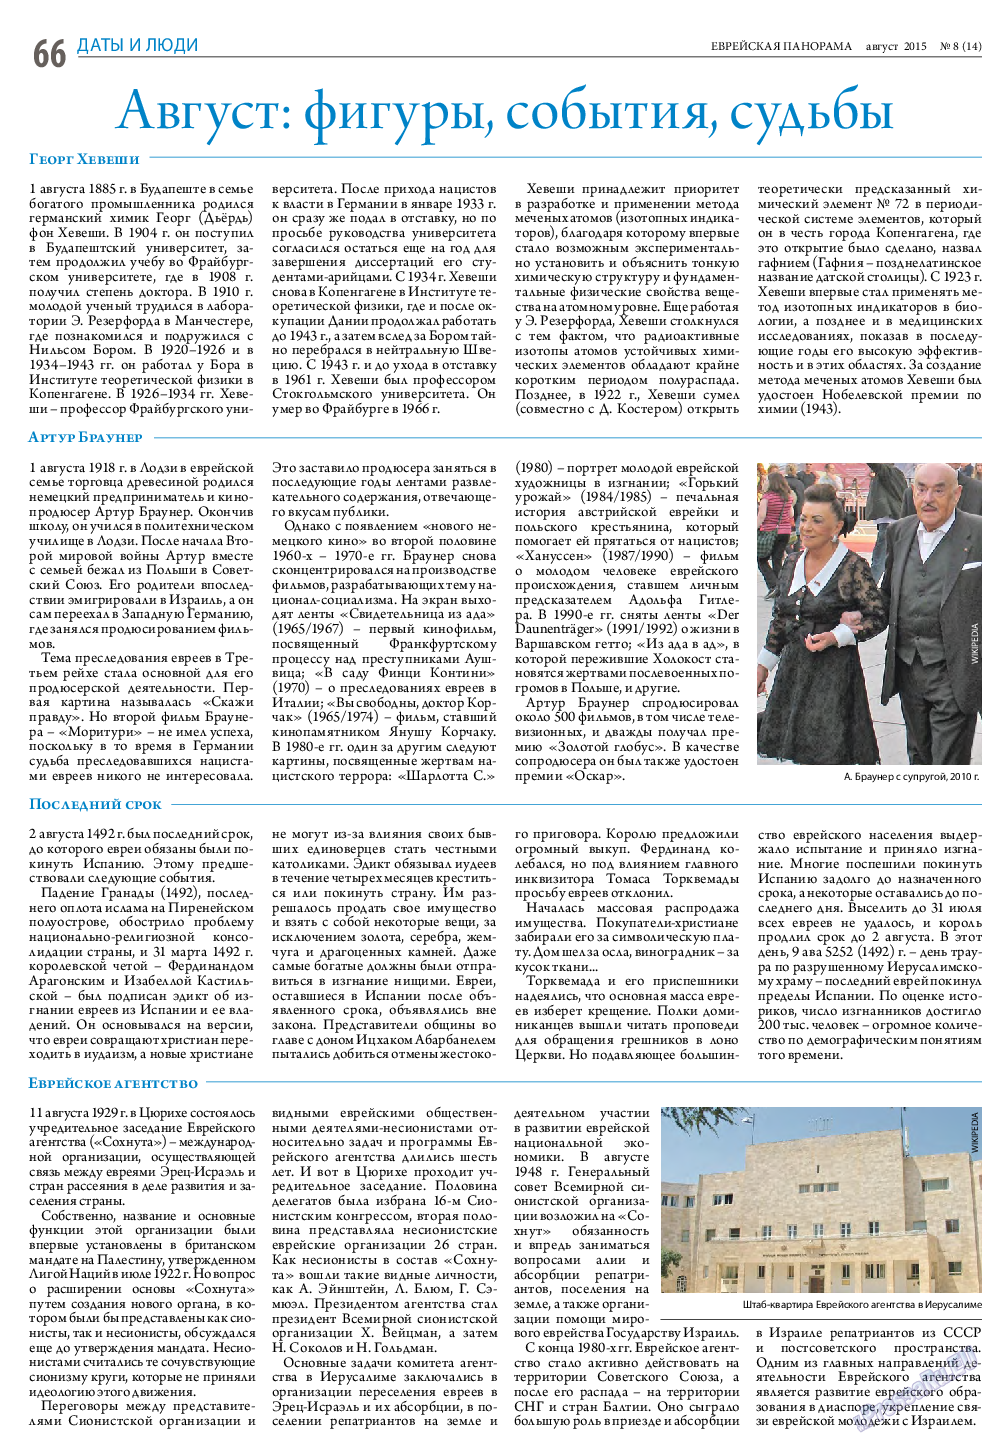 Еврейская панорама (газета). 2015 год, номер 8, стр. 66